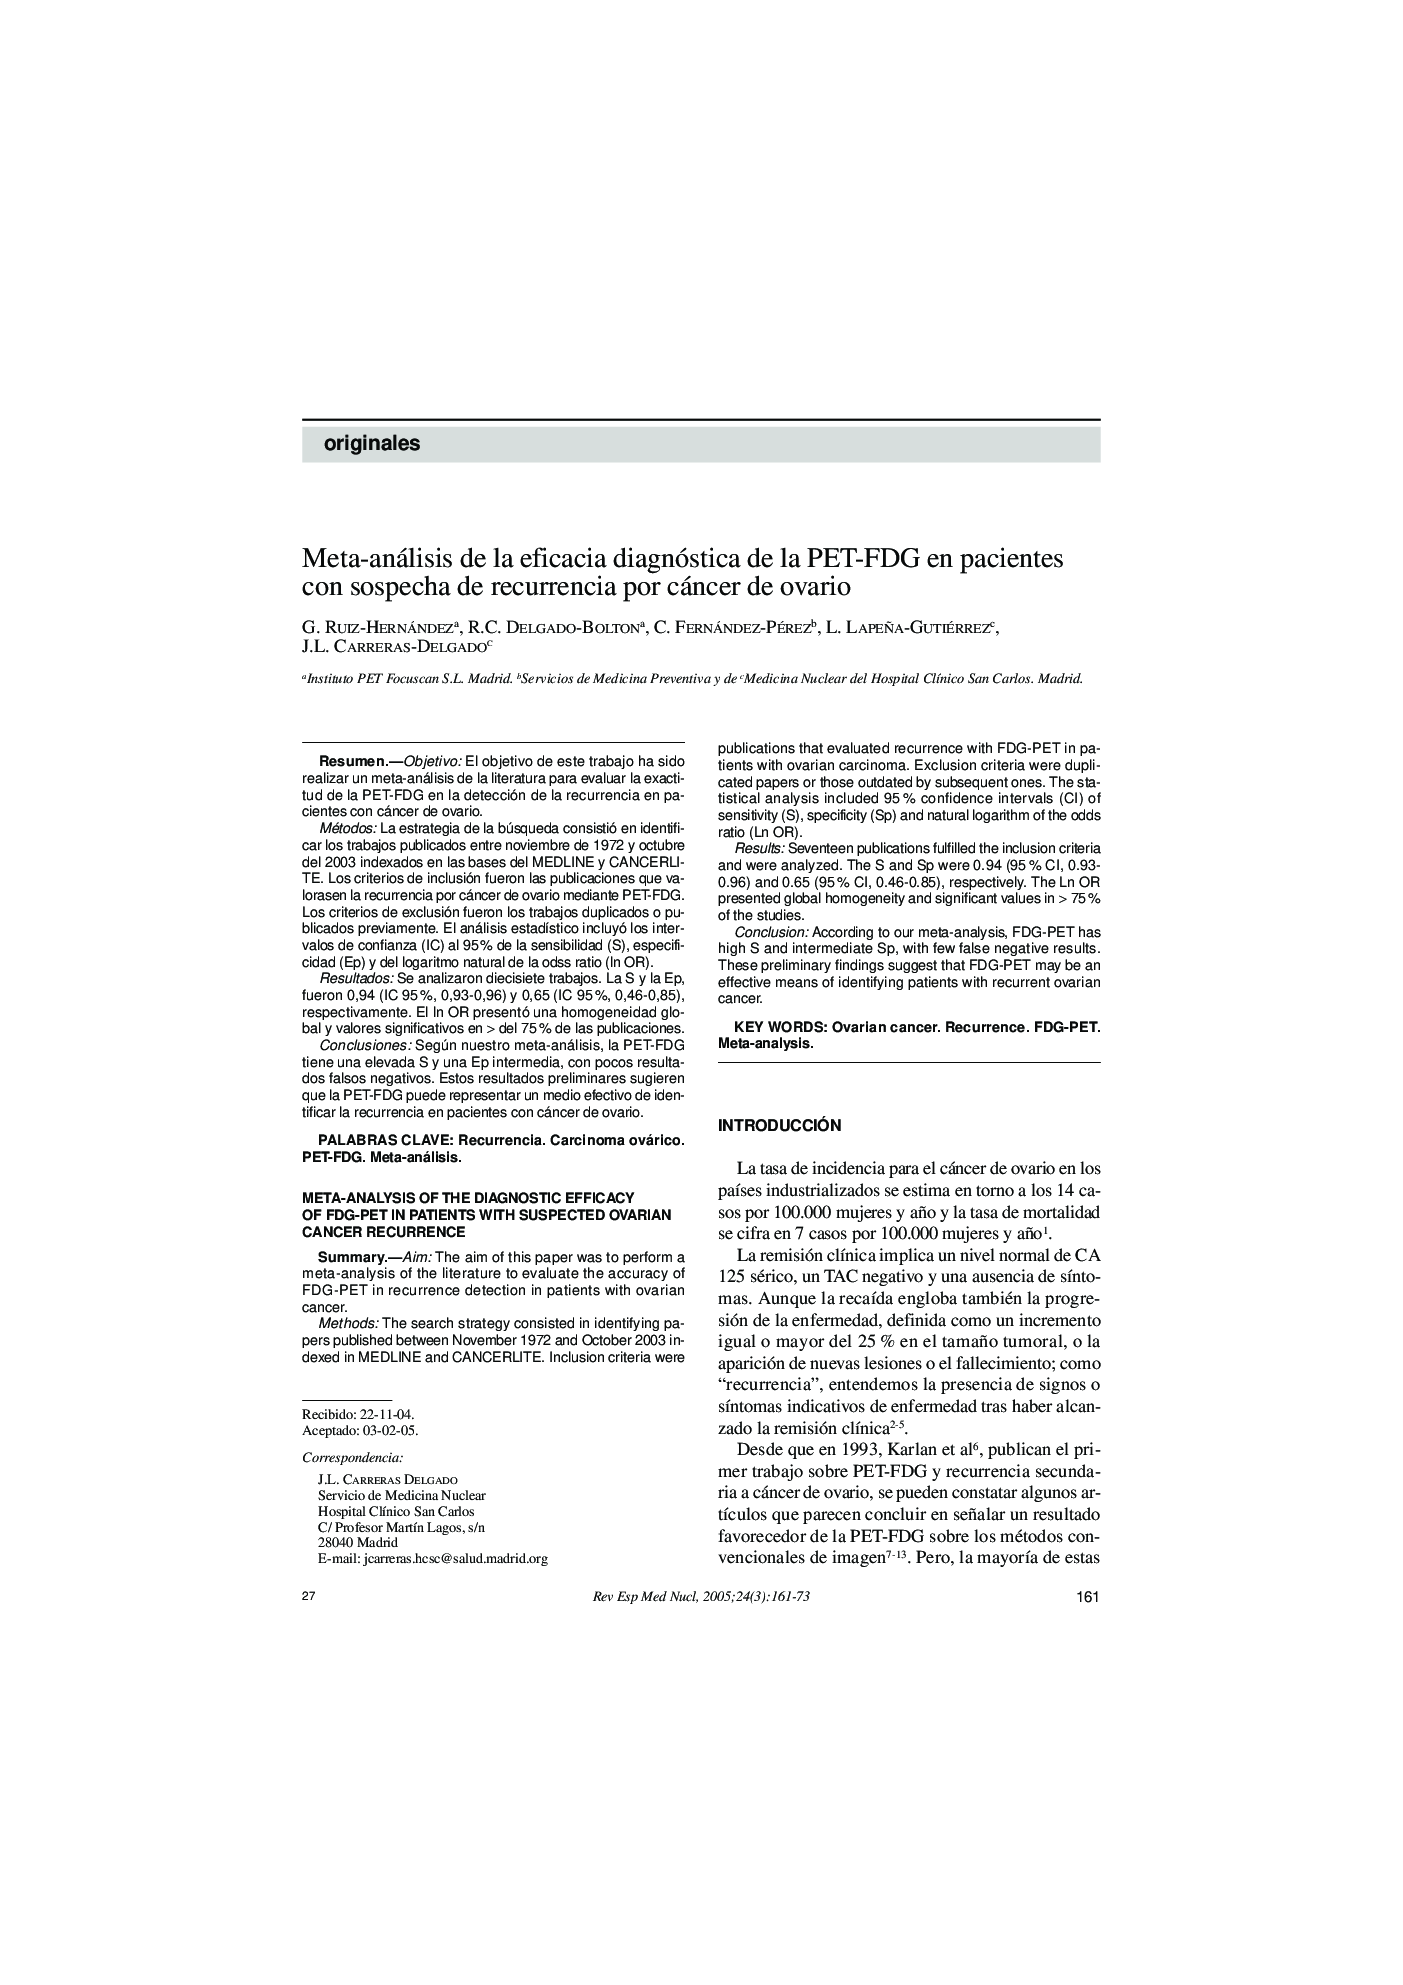 Meta-análisis de la eficacia diagnóstica de la PET-FDG en pacientes con sospecha de recurrencia por cáncer de ovario